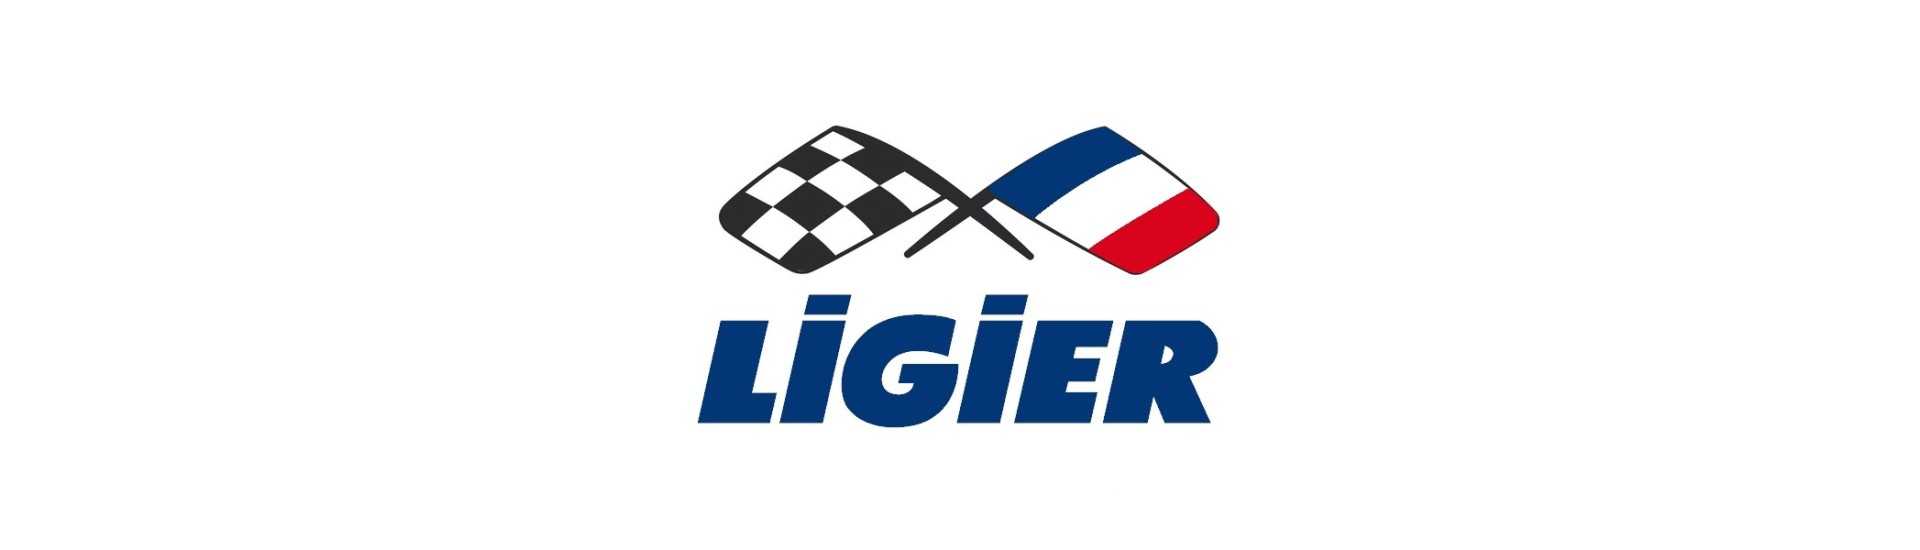 Importe del parabrisas al mejor precio para un coche sin carnet Ligier